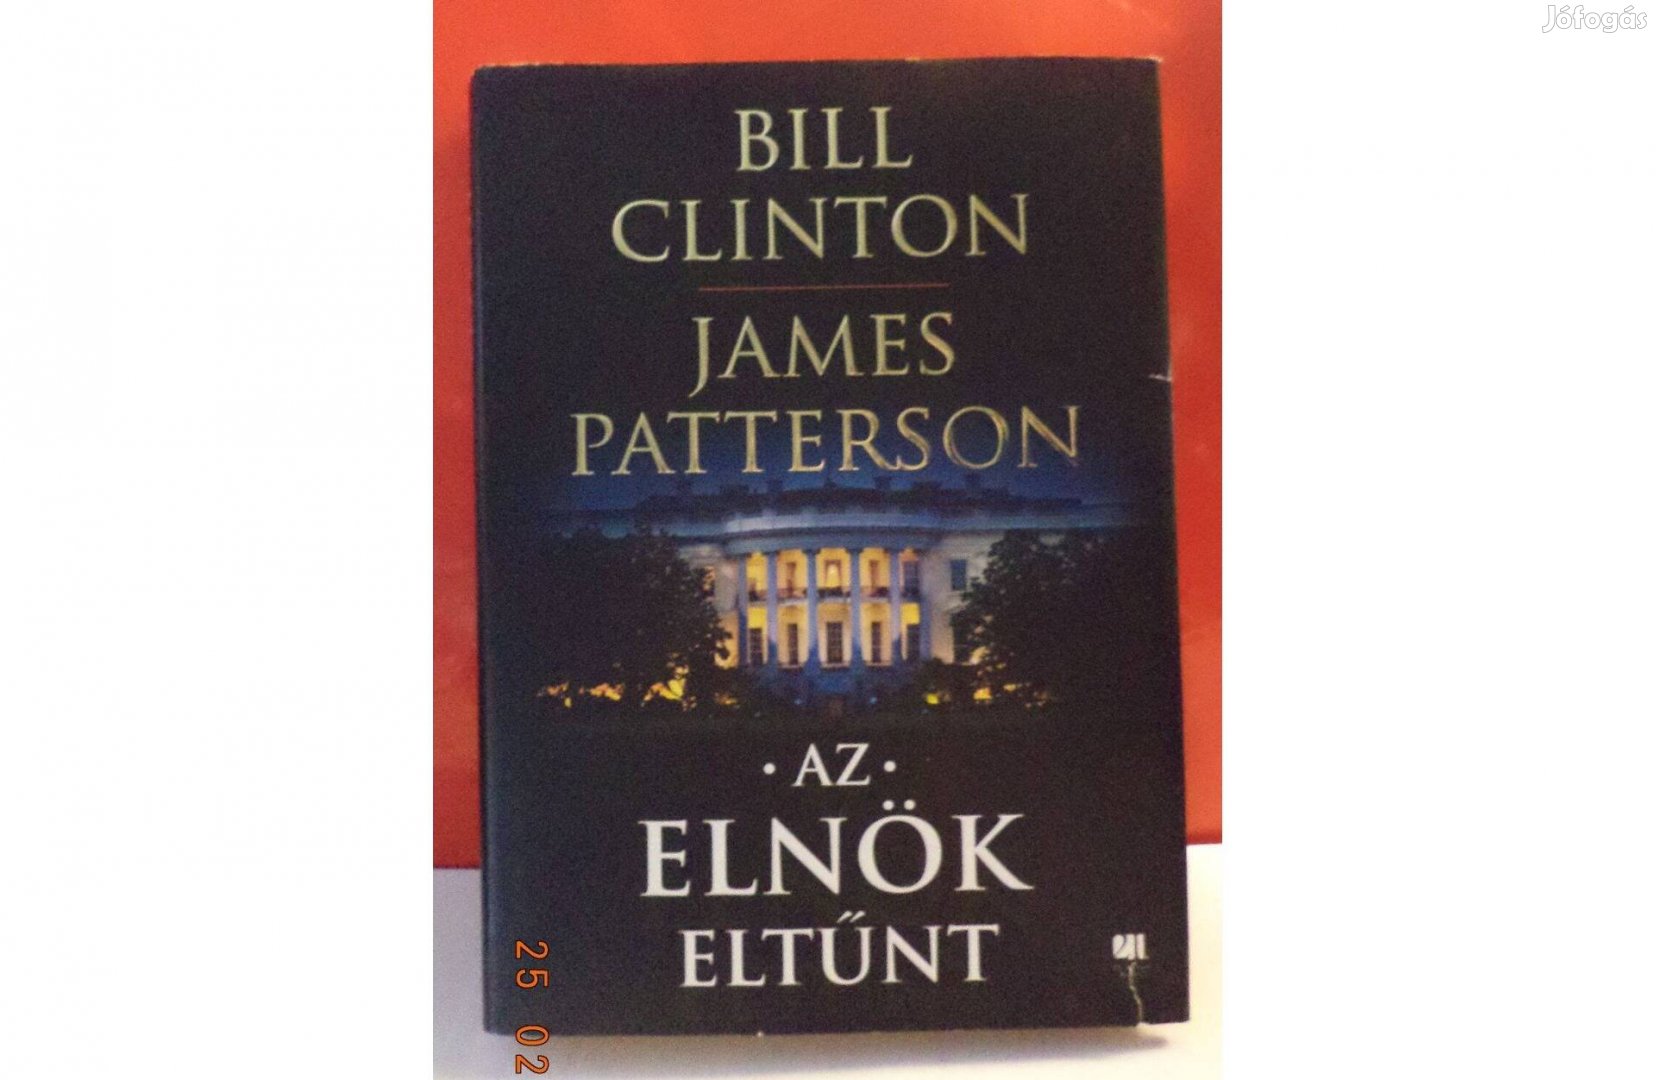 Bill Clinton - James Patterson: Az elnök eltünt